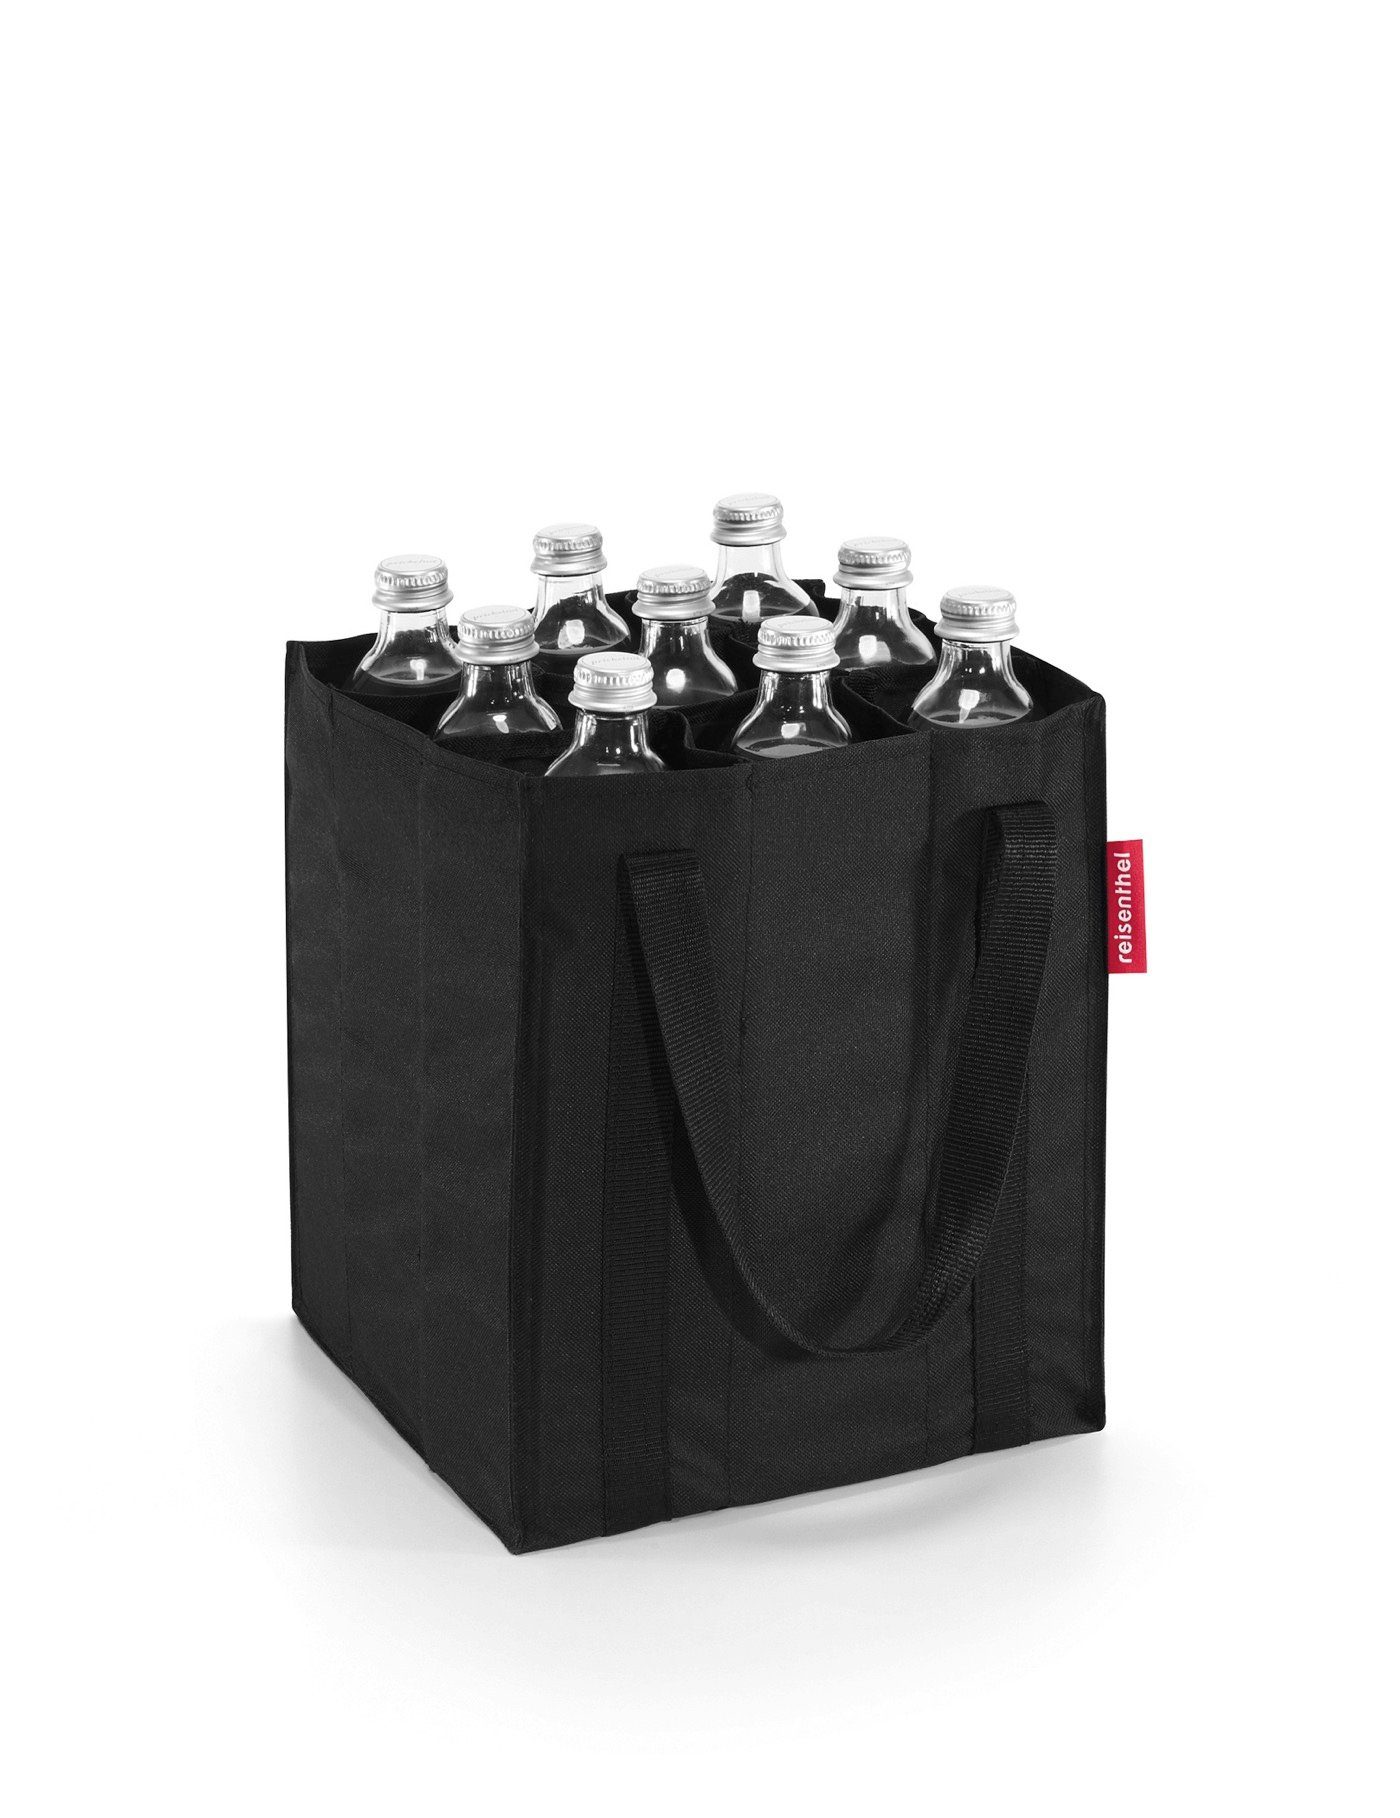 black Einkaufstasche REISENTHEL® bottlebag, bottlebag Flaschenkorb Flaschenkorb Flaschentasche Flaschenträger